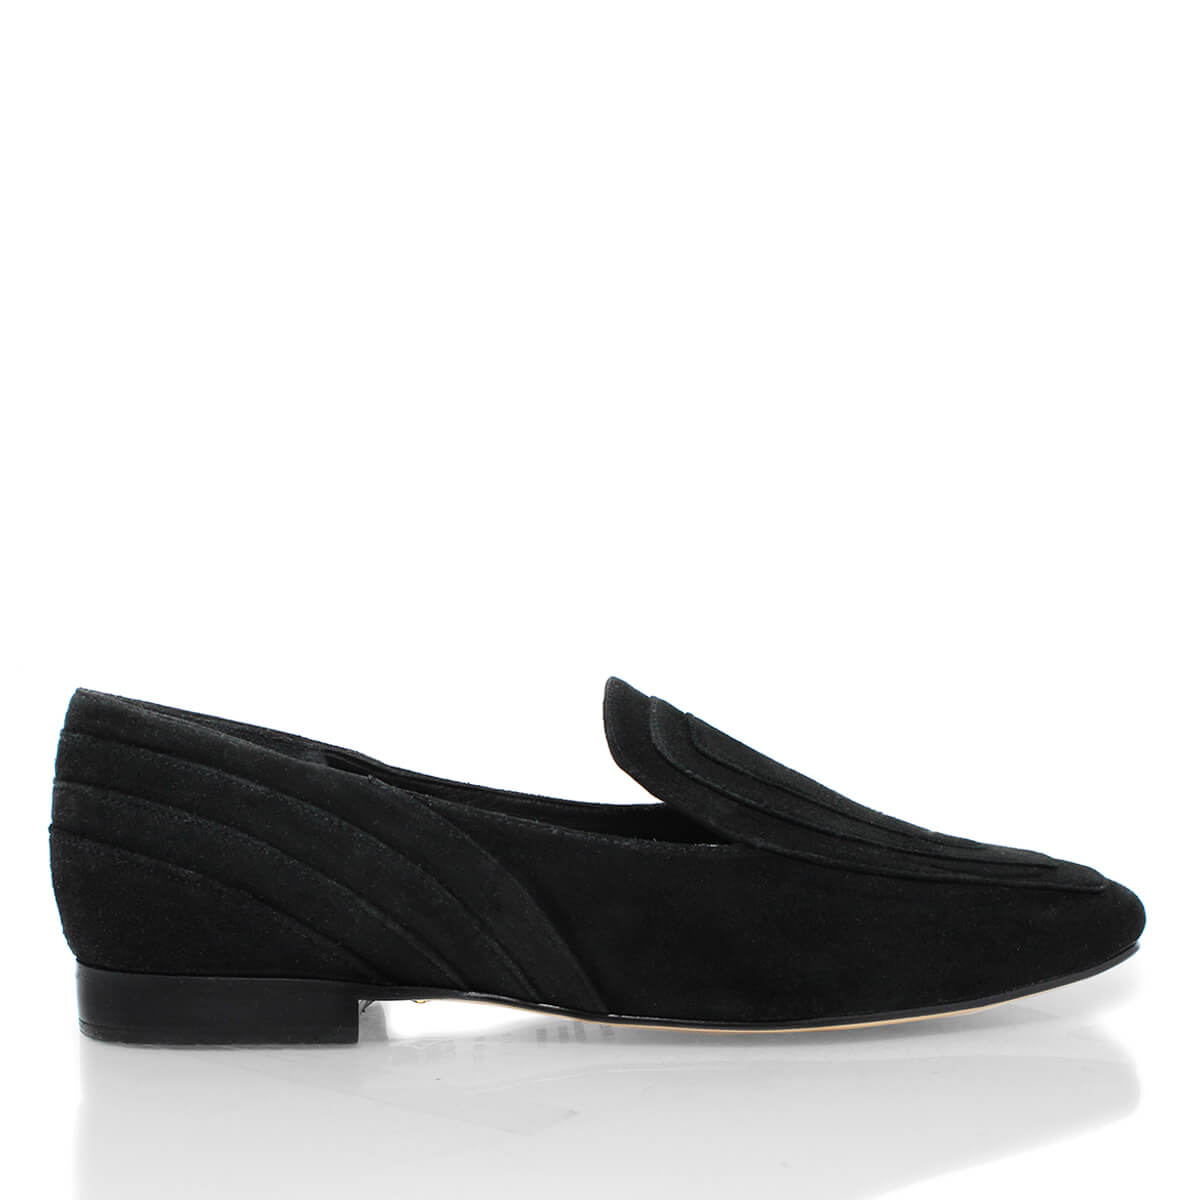 RINGS - Black Suede Regina Romero Women's Flat Moccasin Shoe in Leather